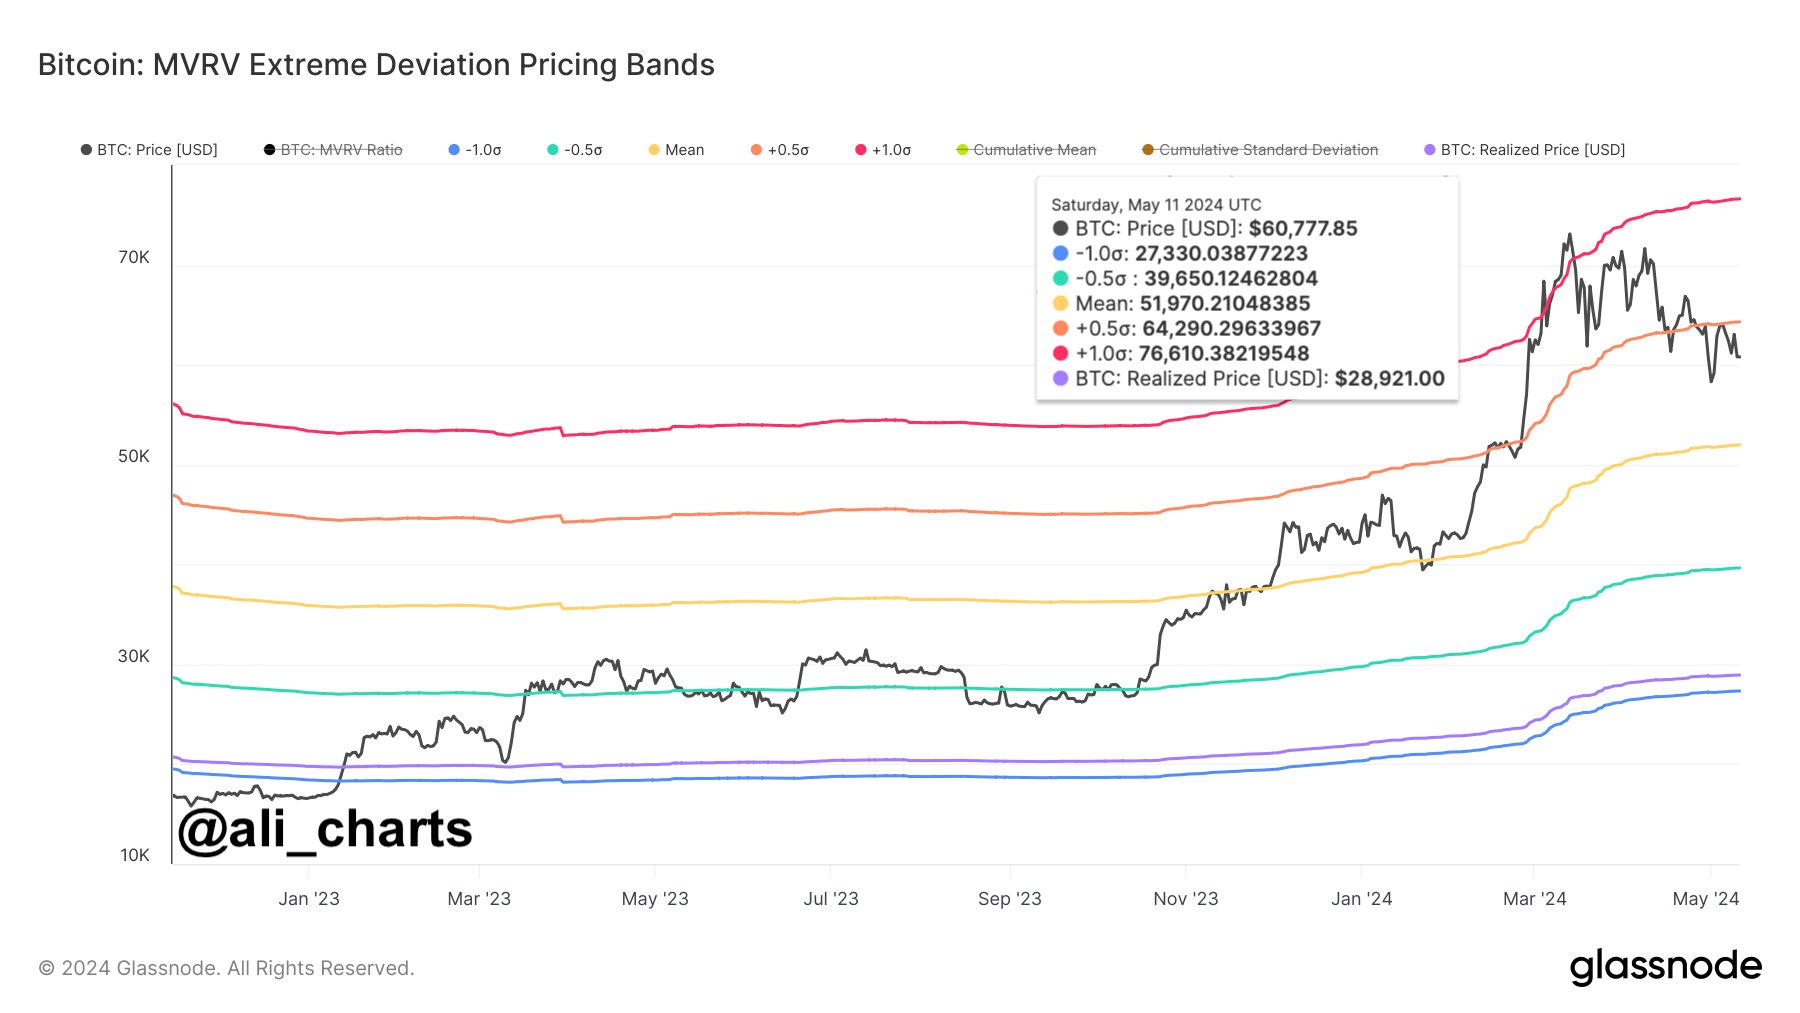 BTC Key Price Levels To Watch